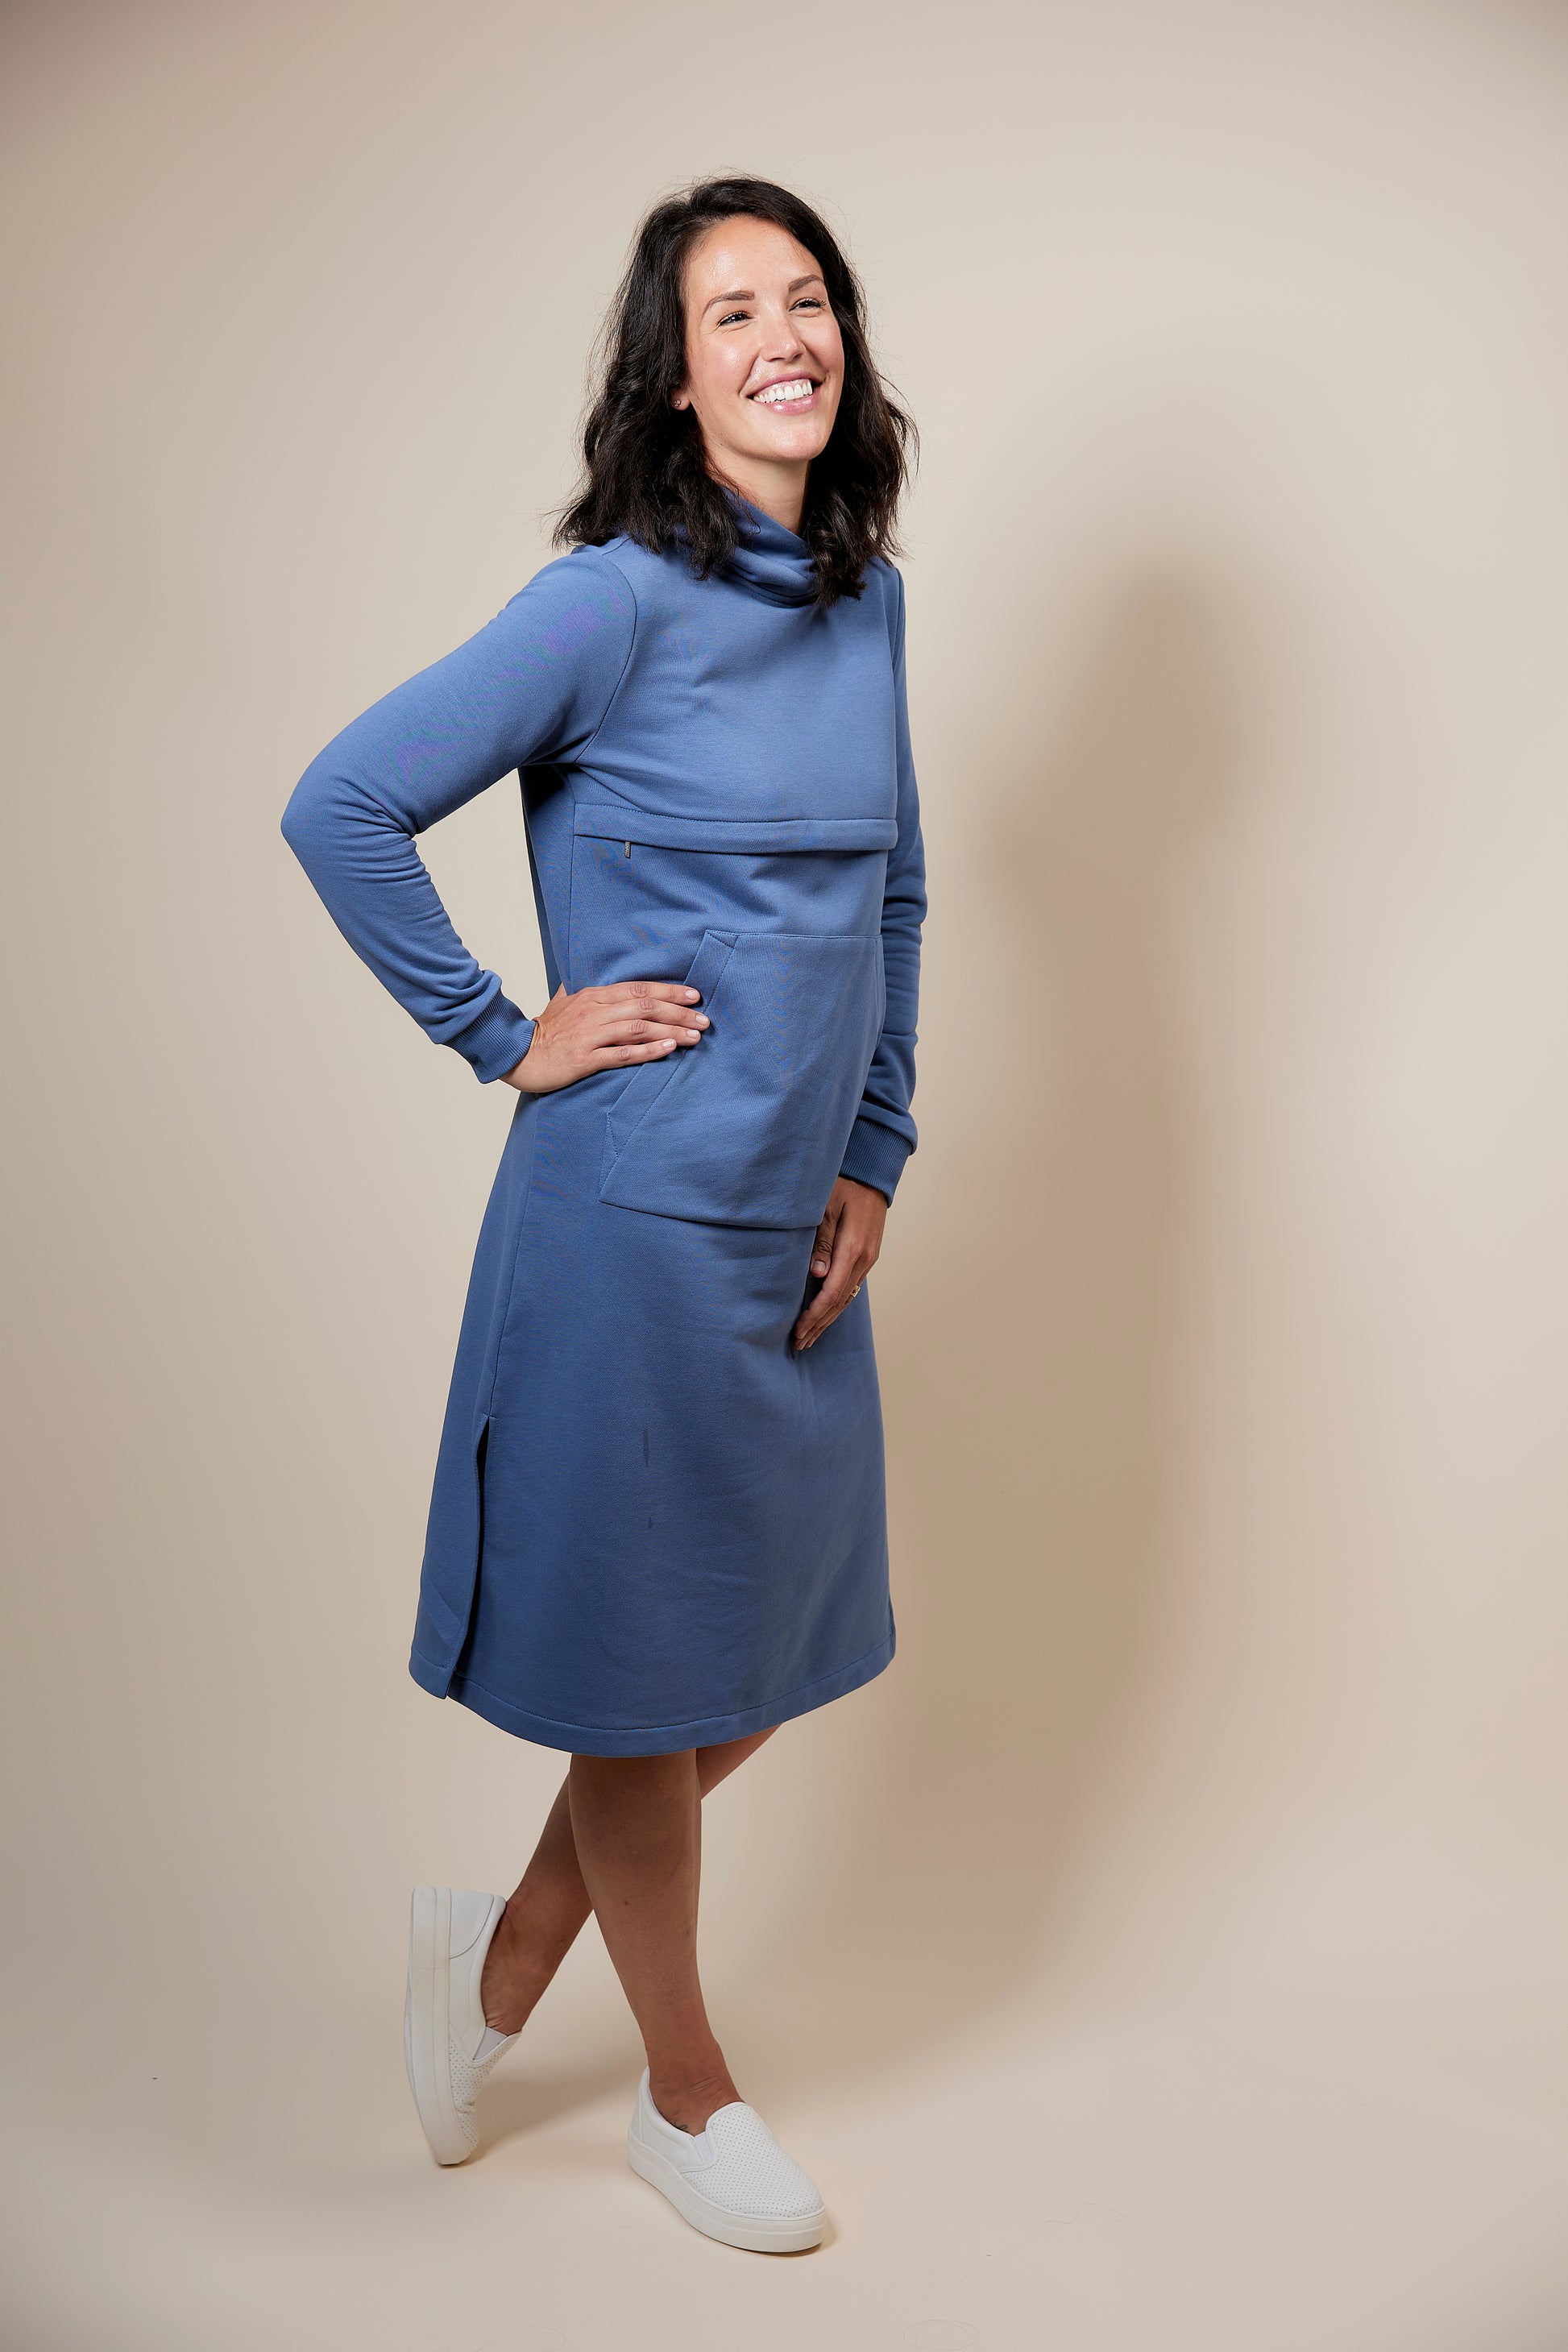 Maternity Nursing Dress with Hidden Zipper – Never Mind Clothes